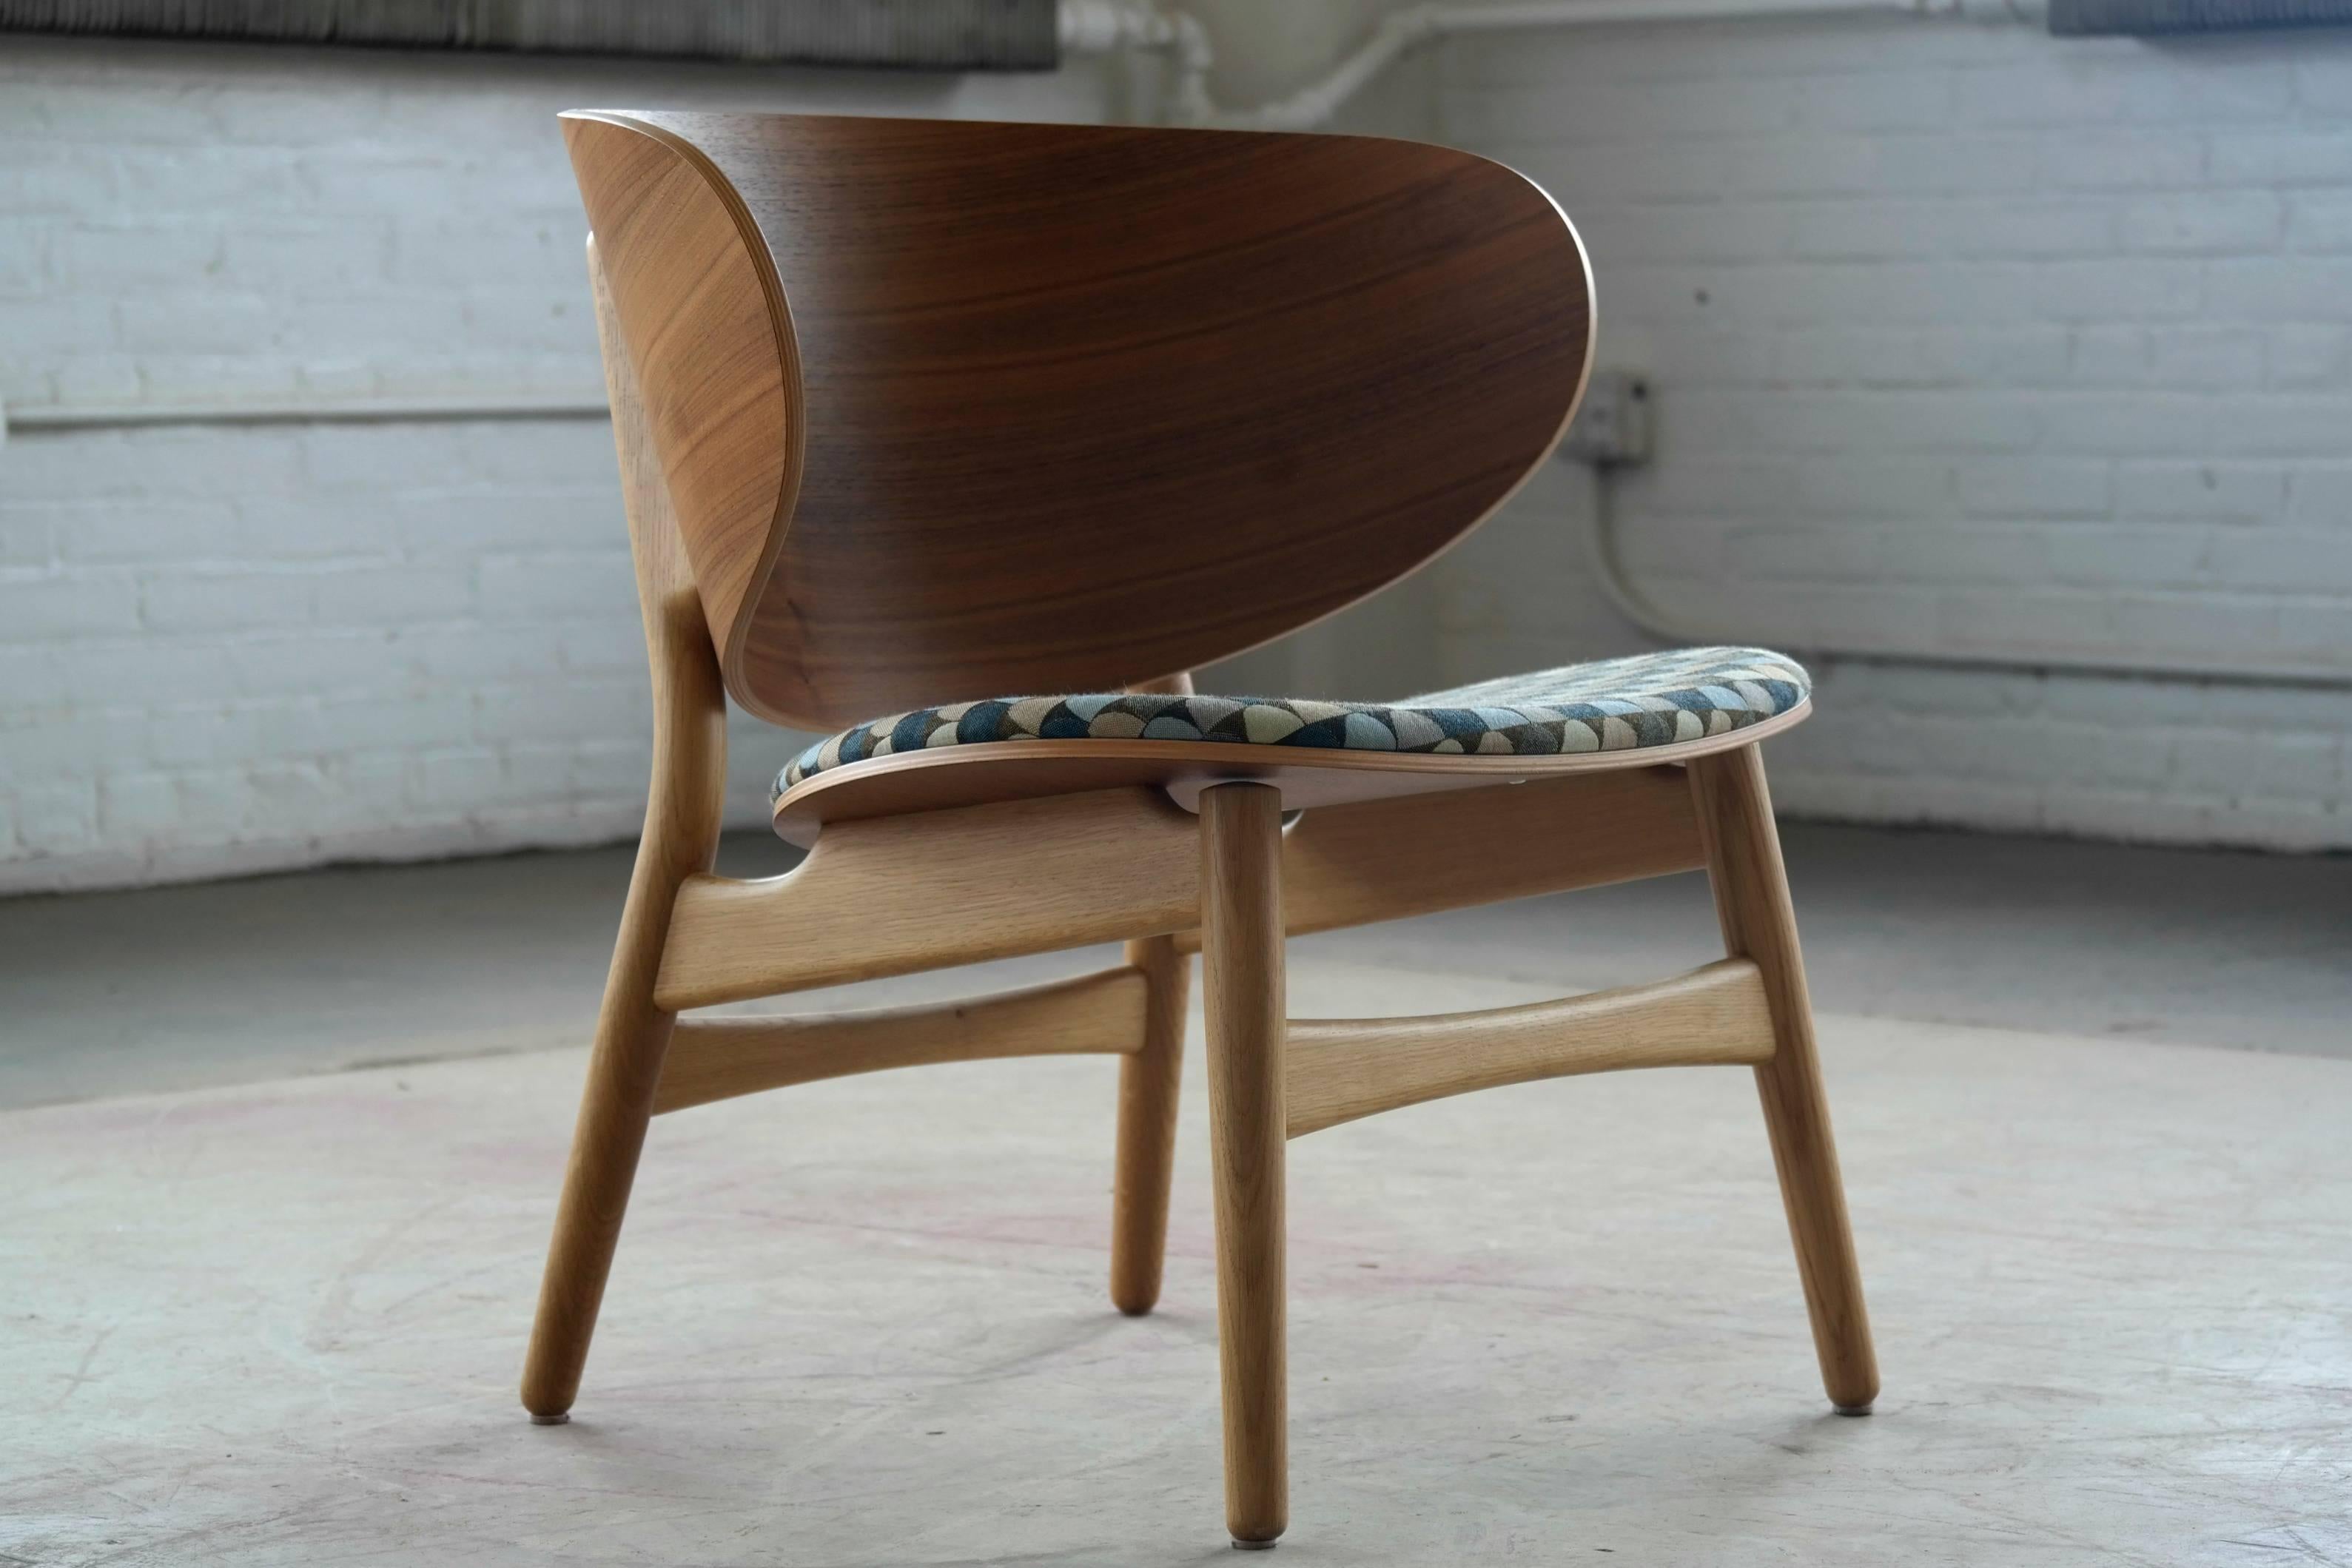 Dieser fantastische Schalenstuhl mit Rückenlehne und Sitzfläche aus Nussbaumfurnier auf einem Gestell aus geseifter Eiche ist eine Neuauflage des 1948 von Hans Wegner entworfenen Classic-Stuhls von GETAMA aus dem Jahr 2015. Während das ursprüngliche